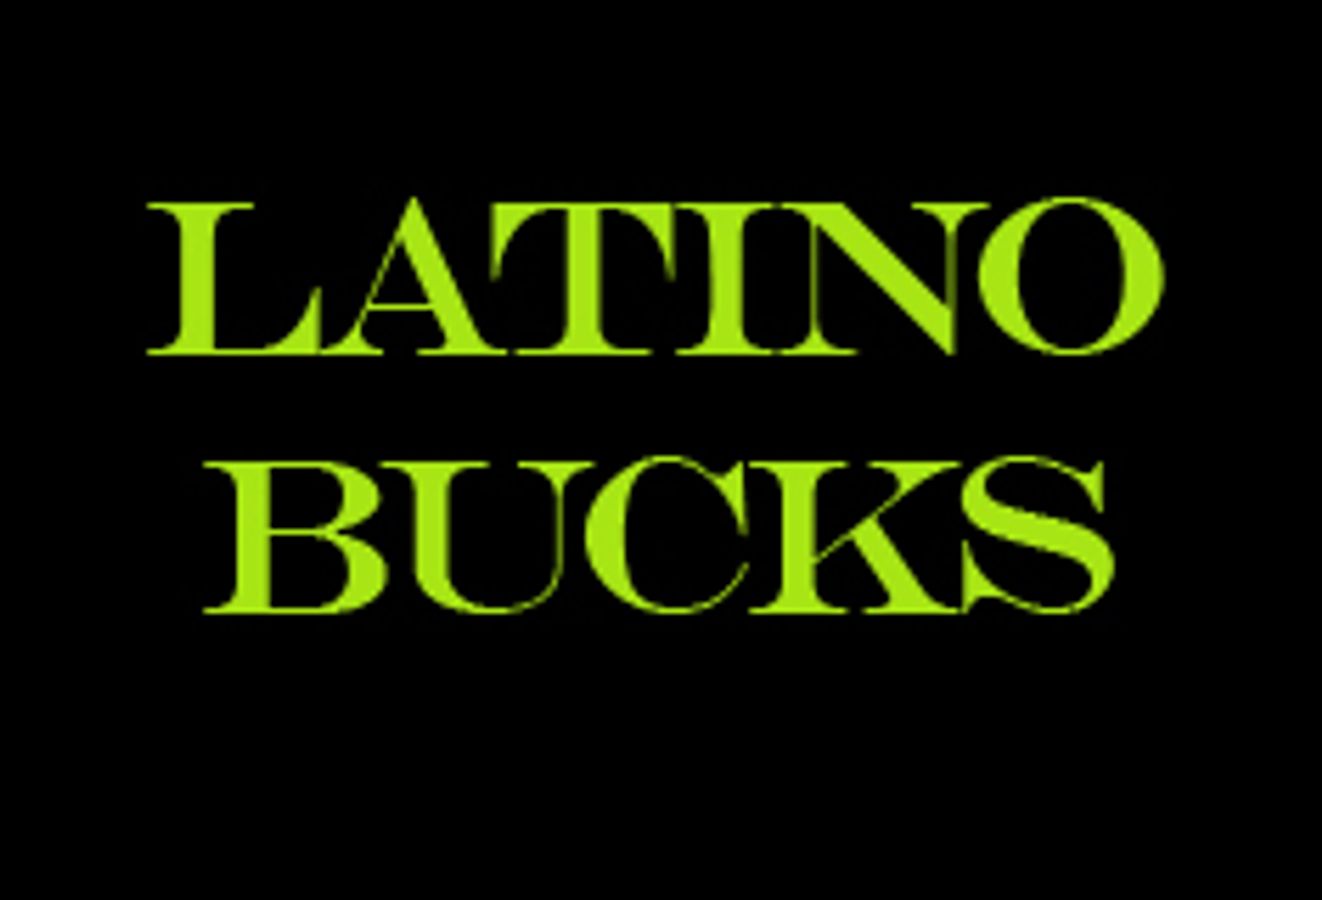 LatinoBucks